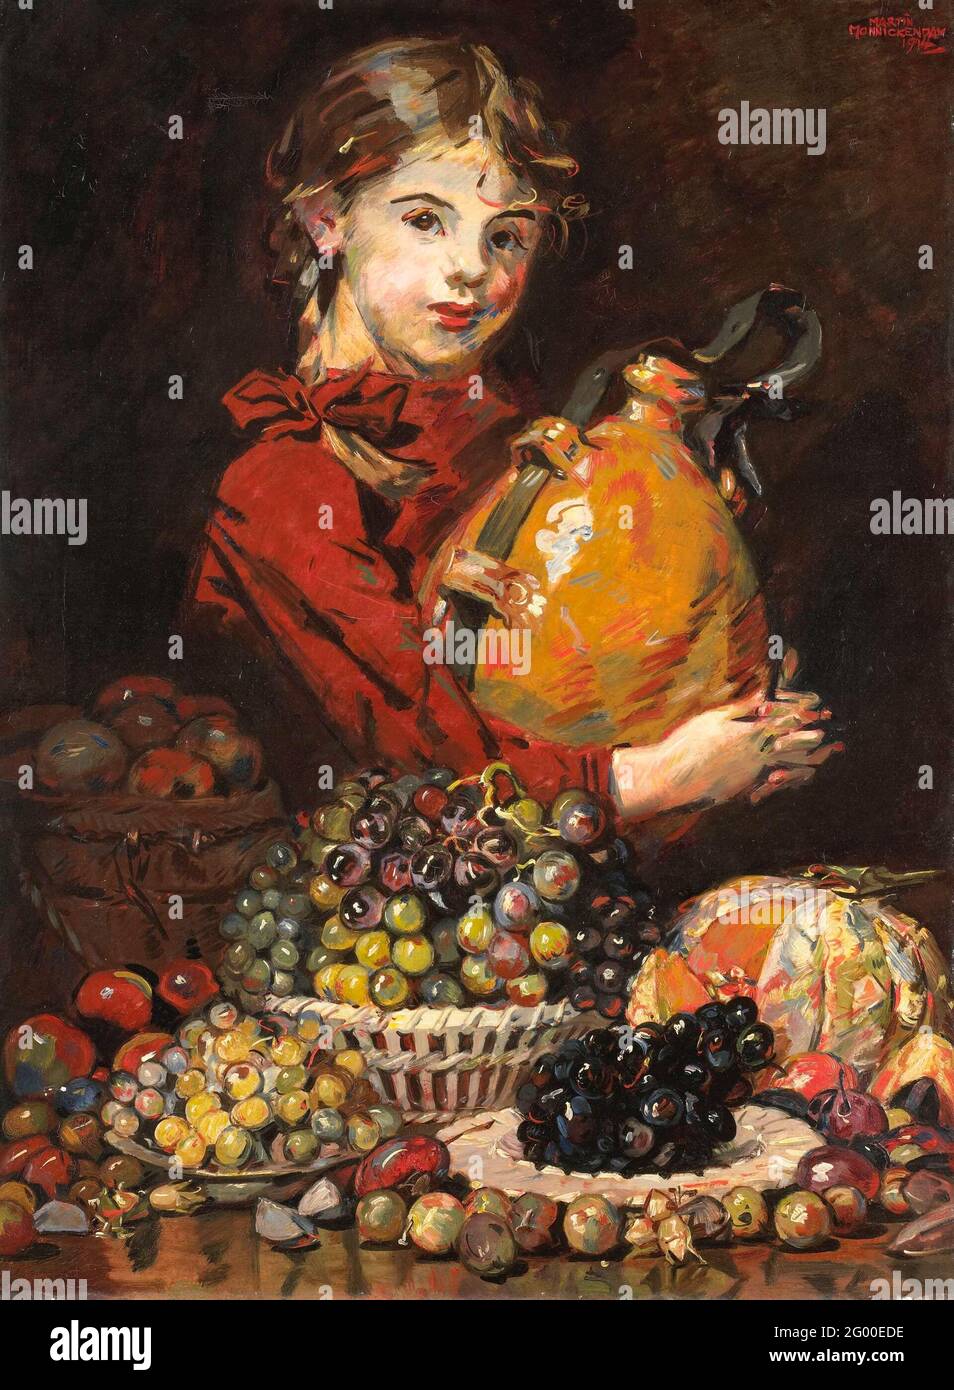 Monarosa, hija del pintor, como vendedora de frutas. Monarosa, hija del  pintor, como vendedora de frutas. La chica está detrás de una mesa en la  que se exhiben uvas, melón y otras